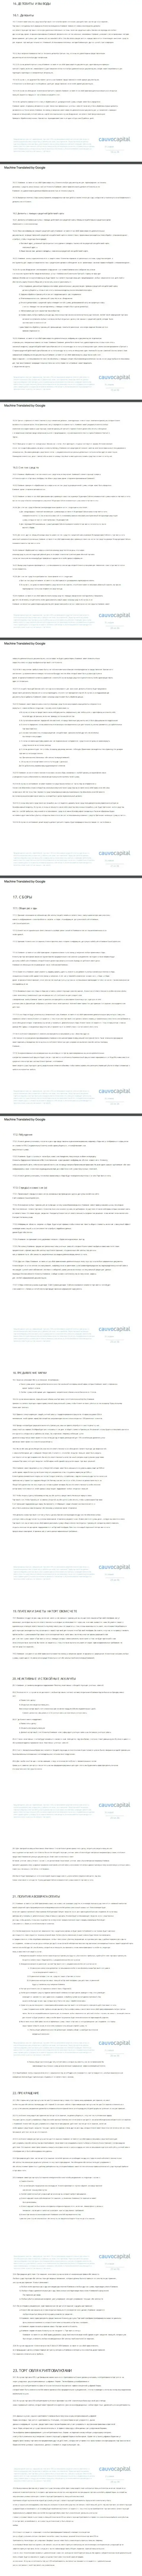 Часть третья пользовательского соглашения FOREX-брокерской компании CauvoCapital